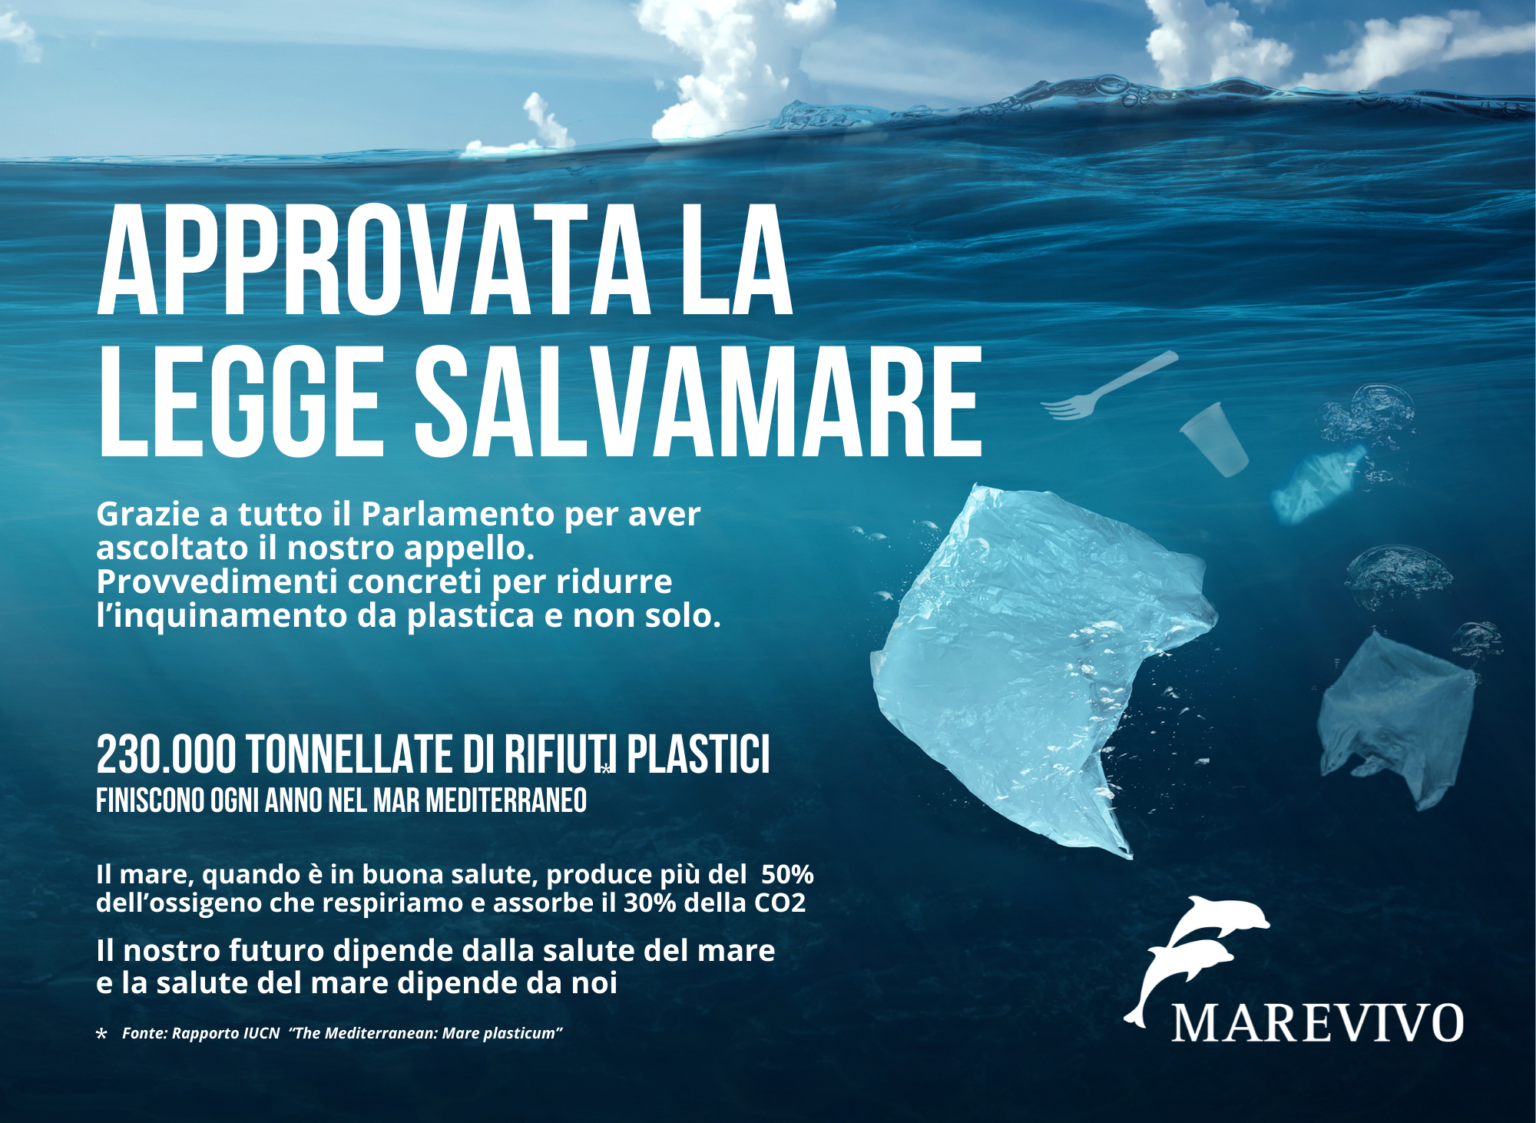 Approvata la legge Salvamare: i pescatori potranno portare a terra la plastica recuperata con le reti